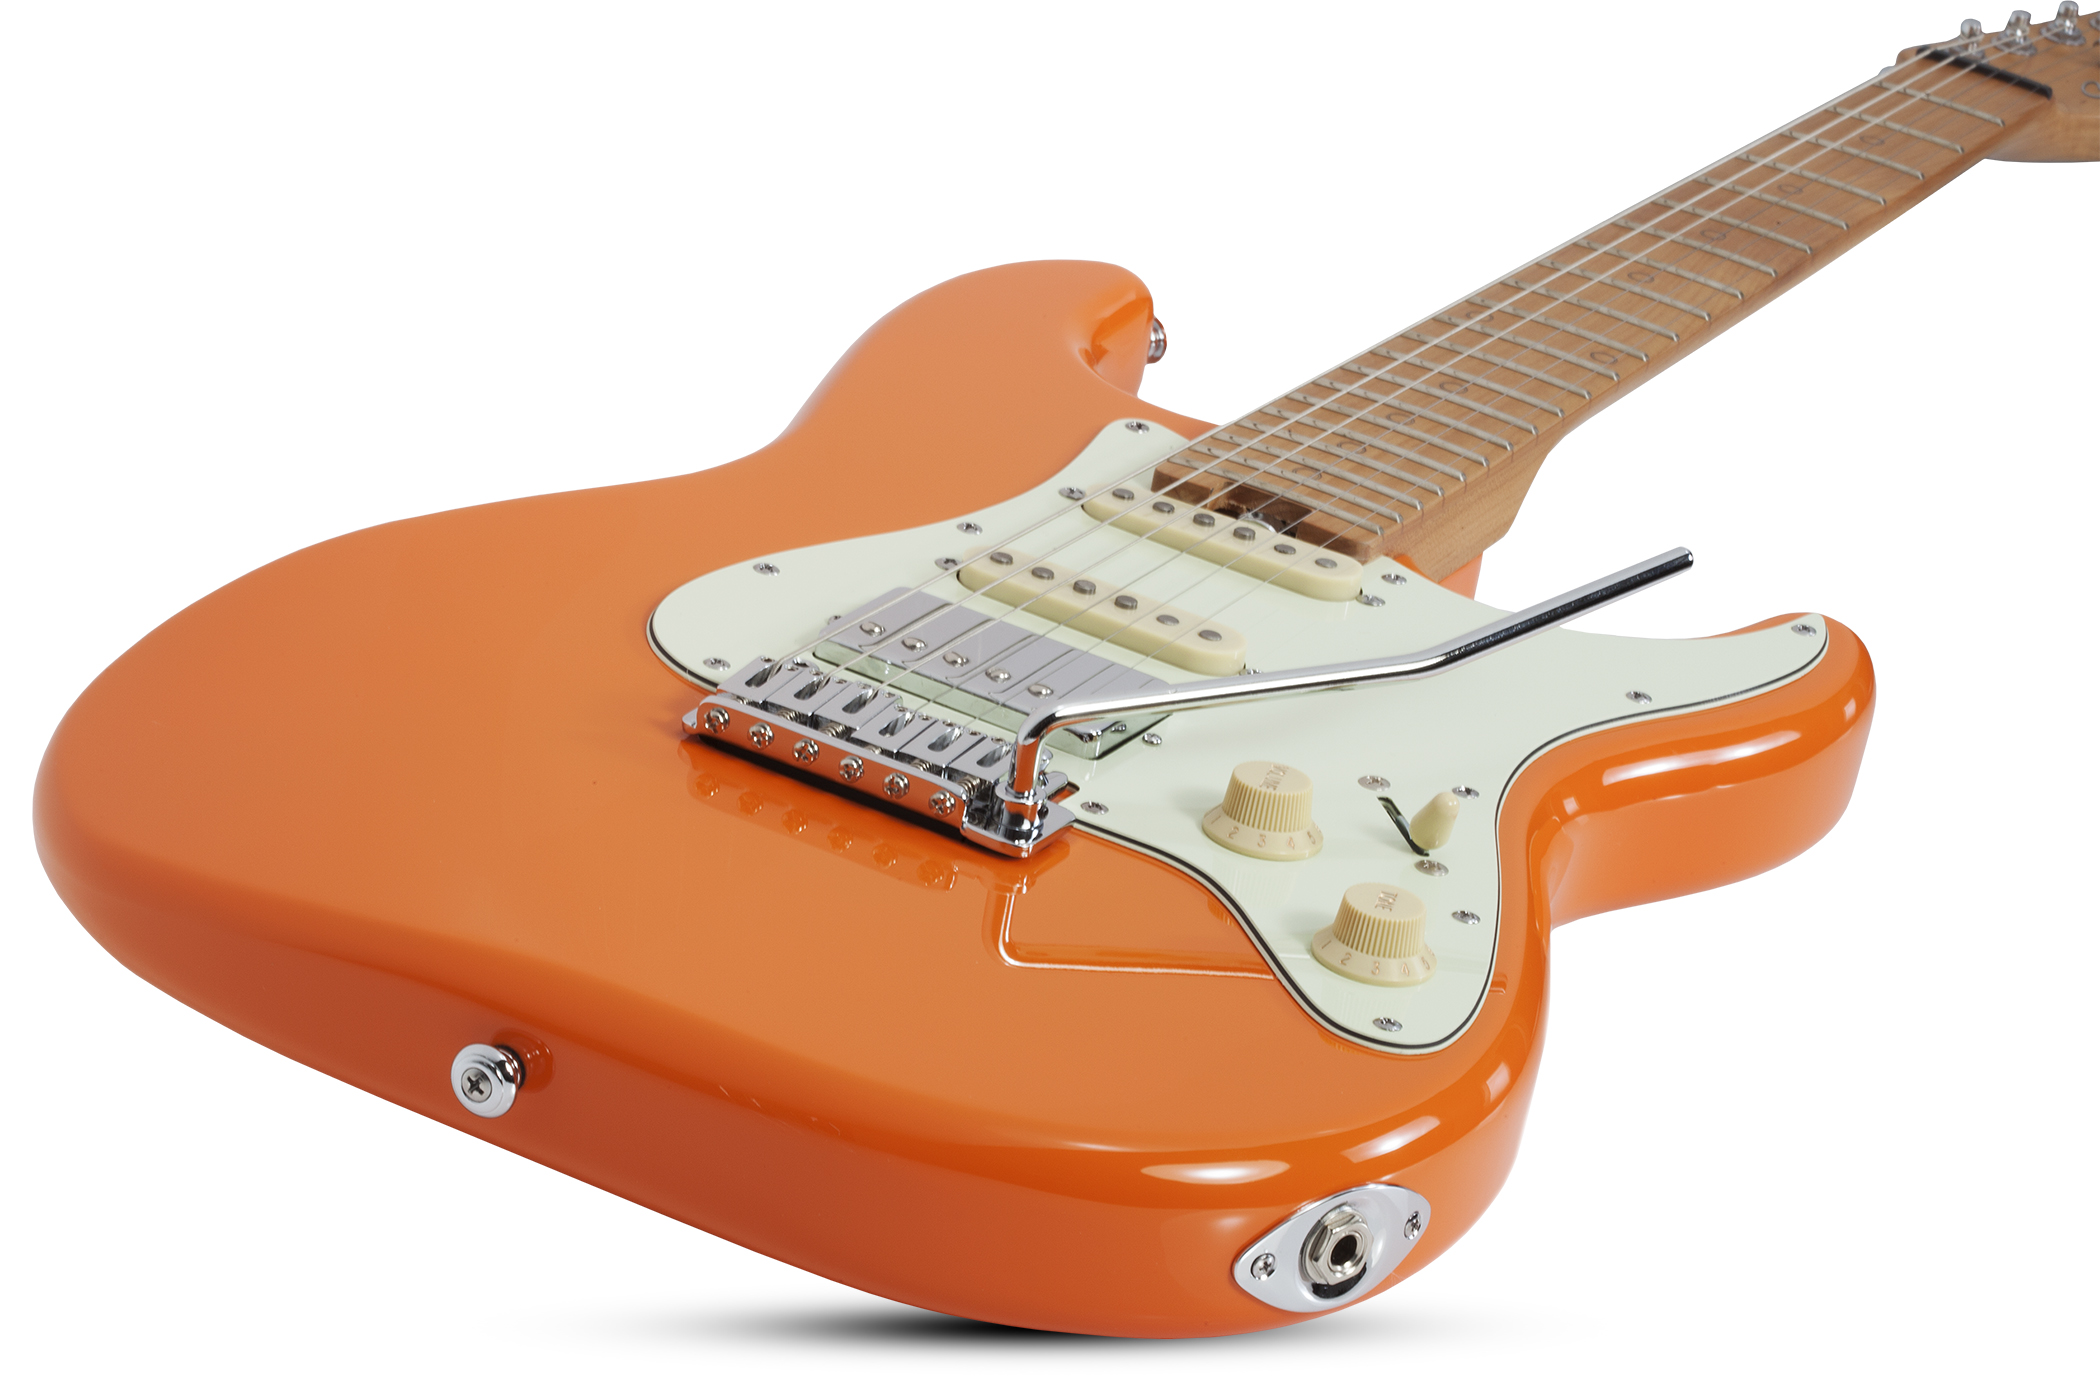 Schecter Nick Johnston Traditional Hss Signature Trem Eb - Atomic Orange - E-Gitarre in Str-Form - Variation 1